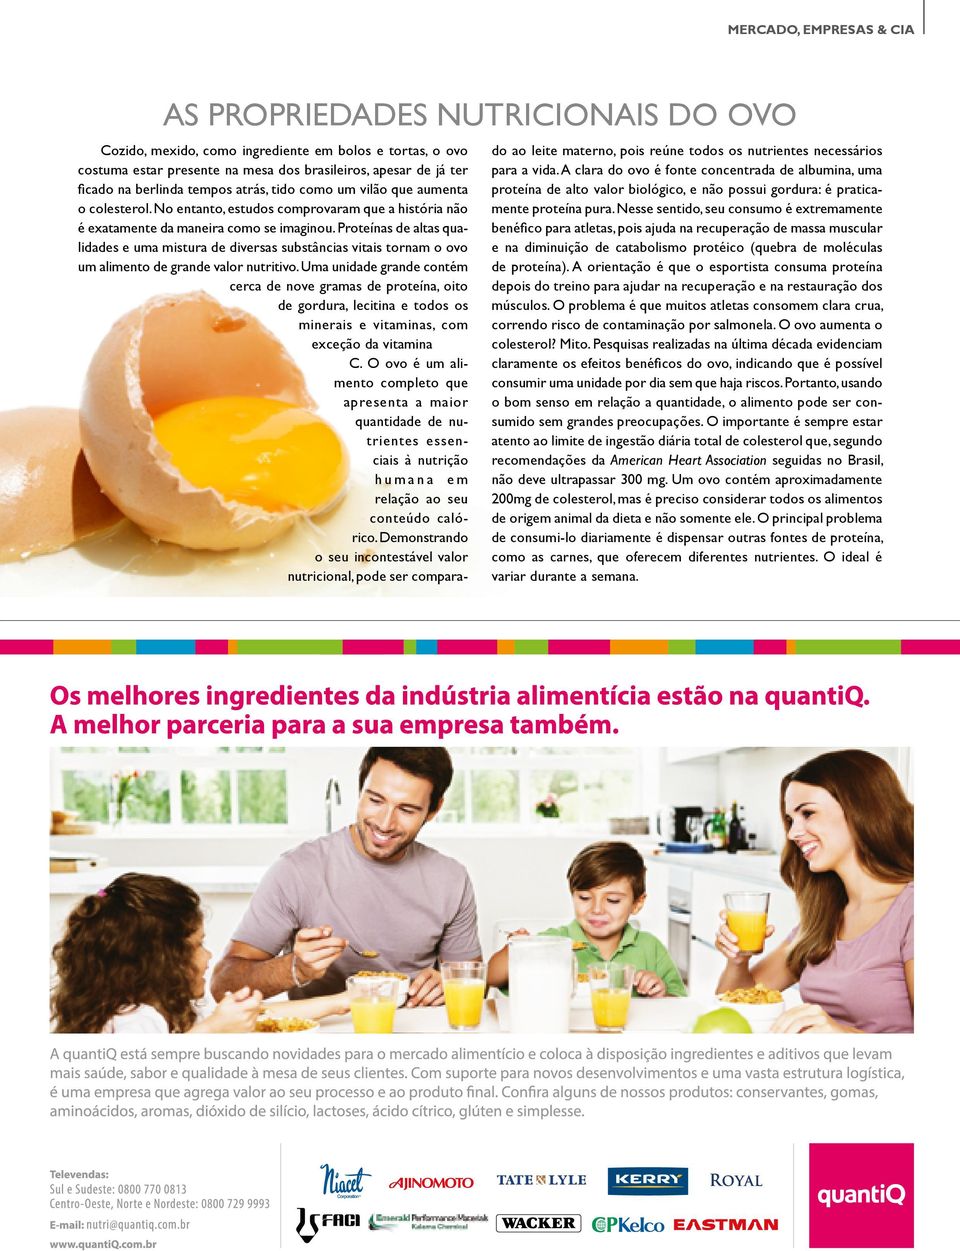 Proteínas de altas qualidades e uma mistura de diversas substâncias vitais tornam o ovo um alimento de grande valor nutritivo.